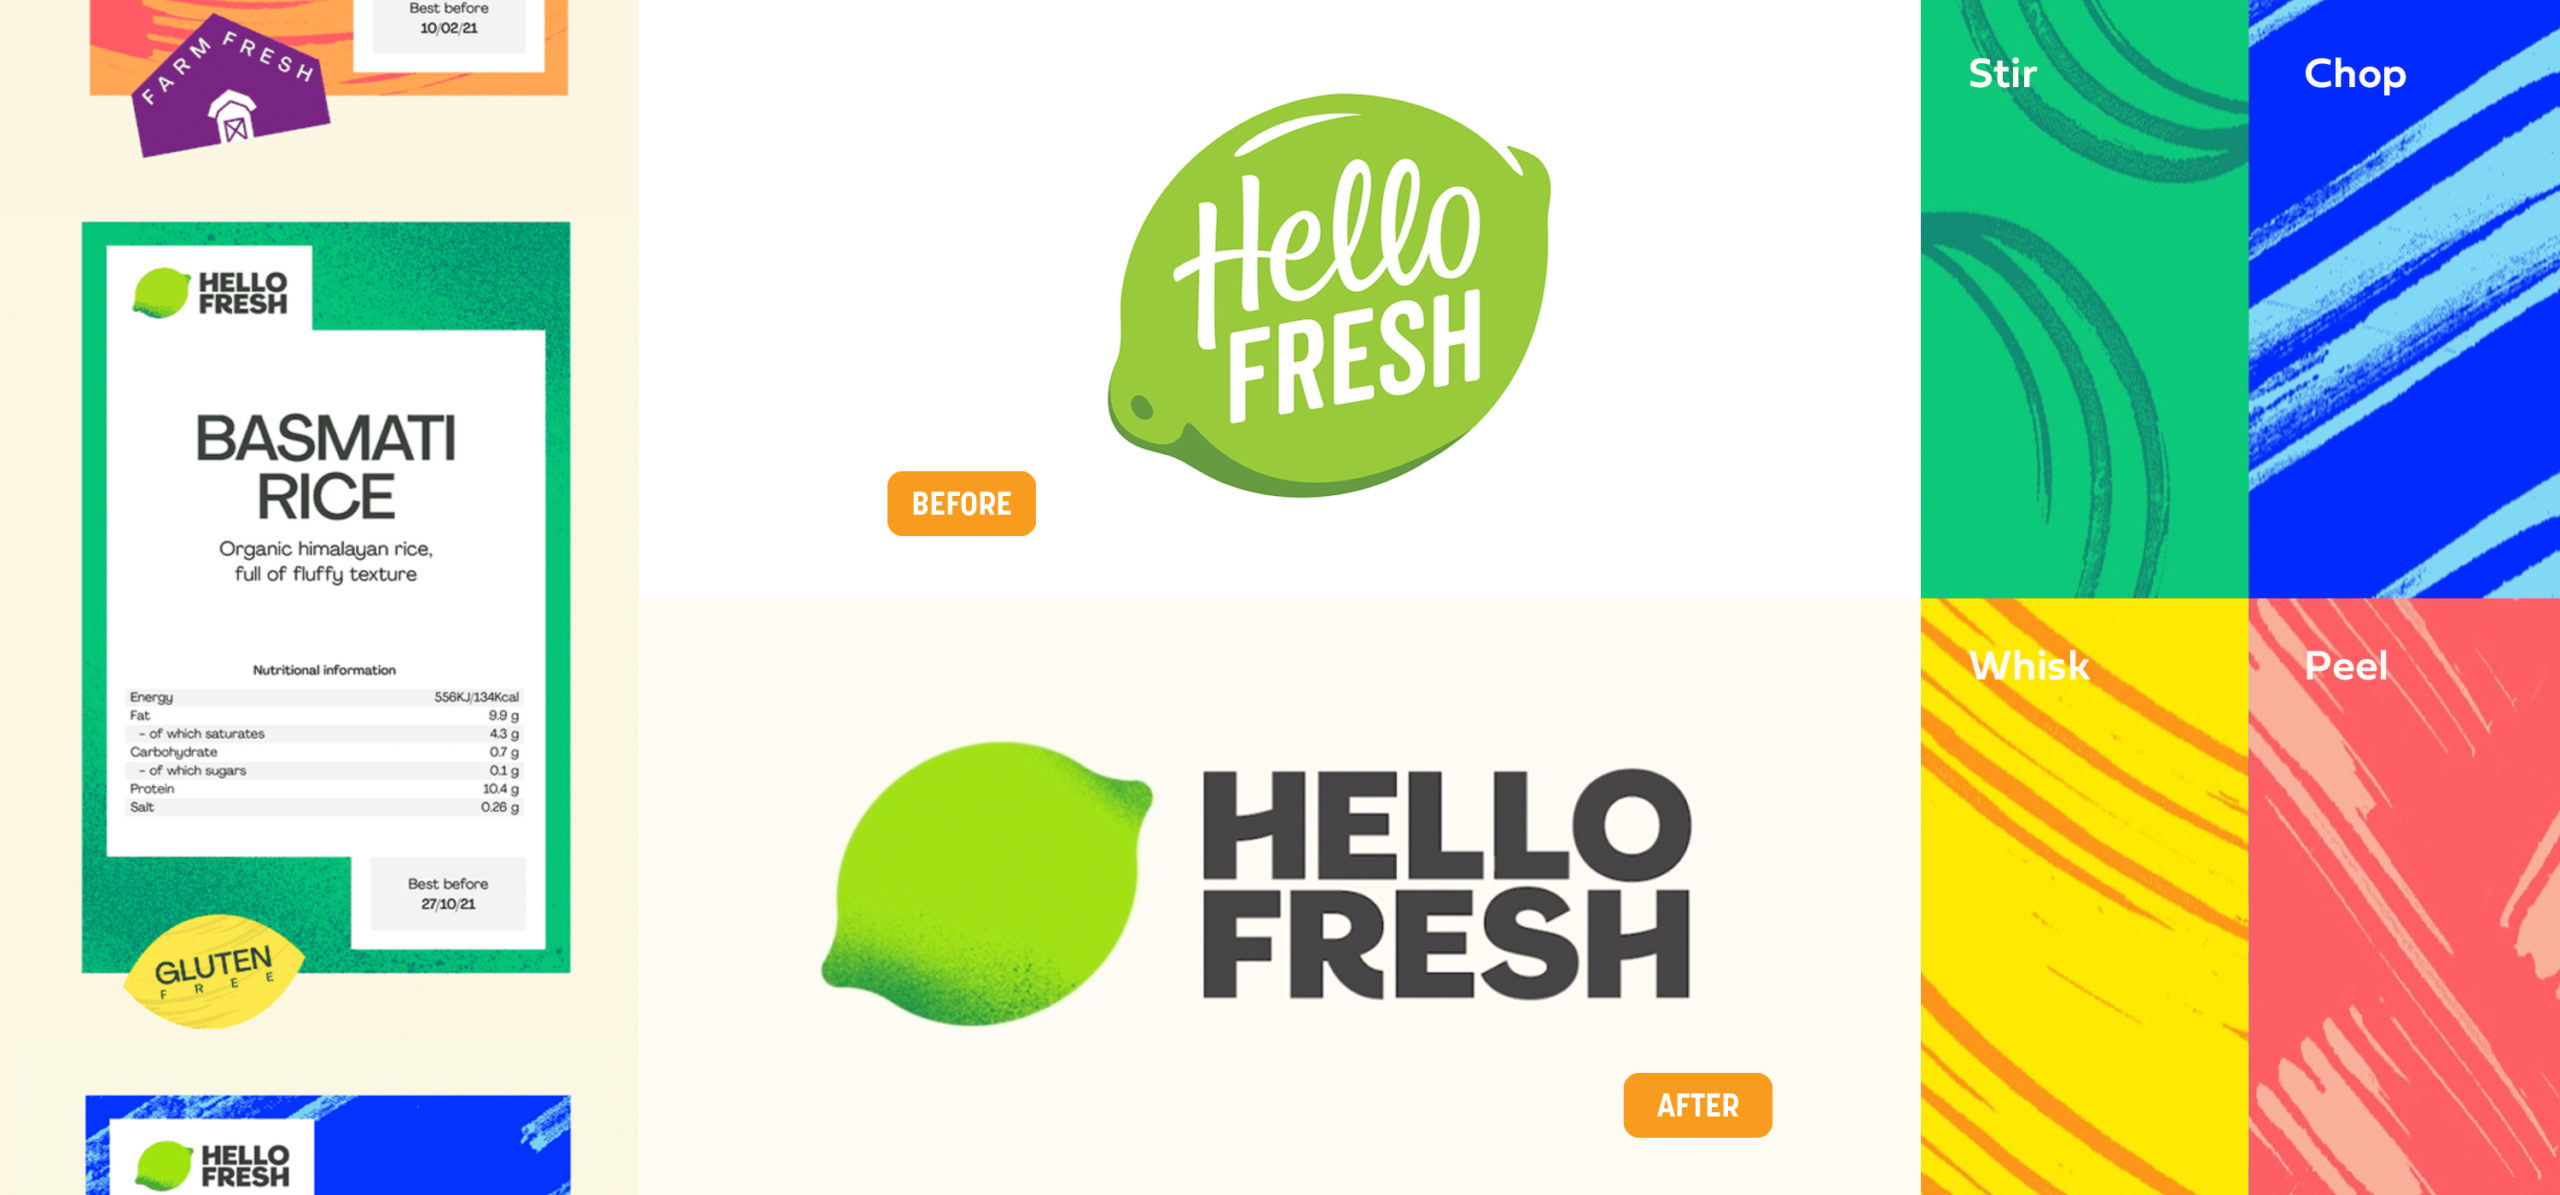 Brand New: New Logo for HelloFresh